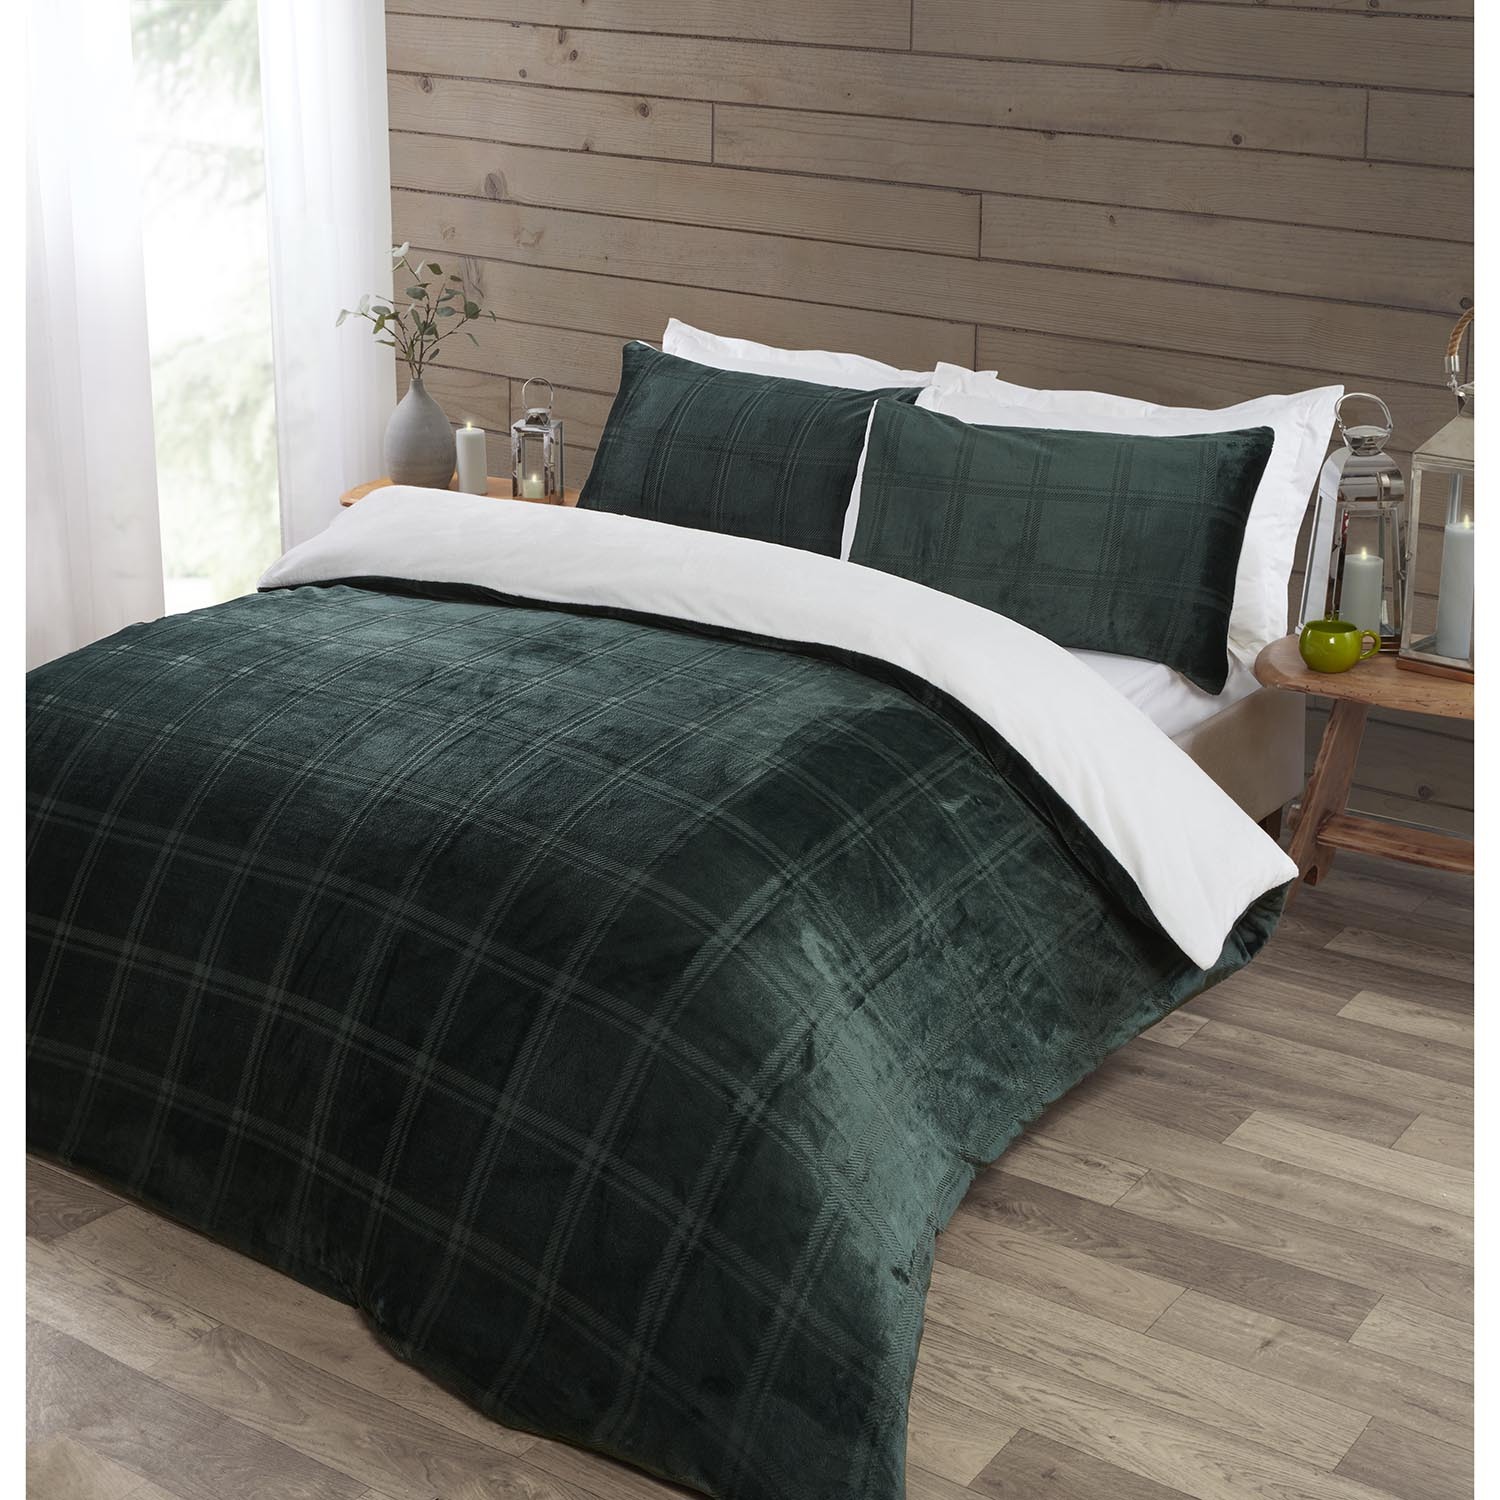 Halston King Size Green Check Fleece Duvet Cover and Pillowcase Set Image 2